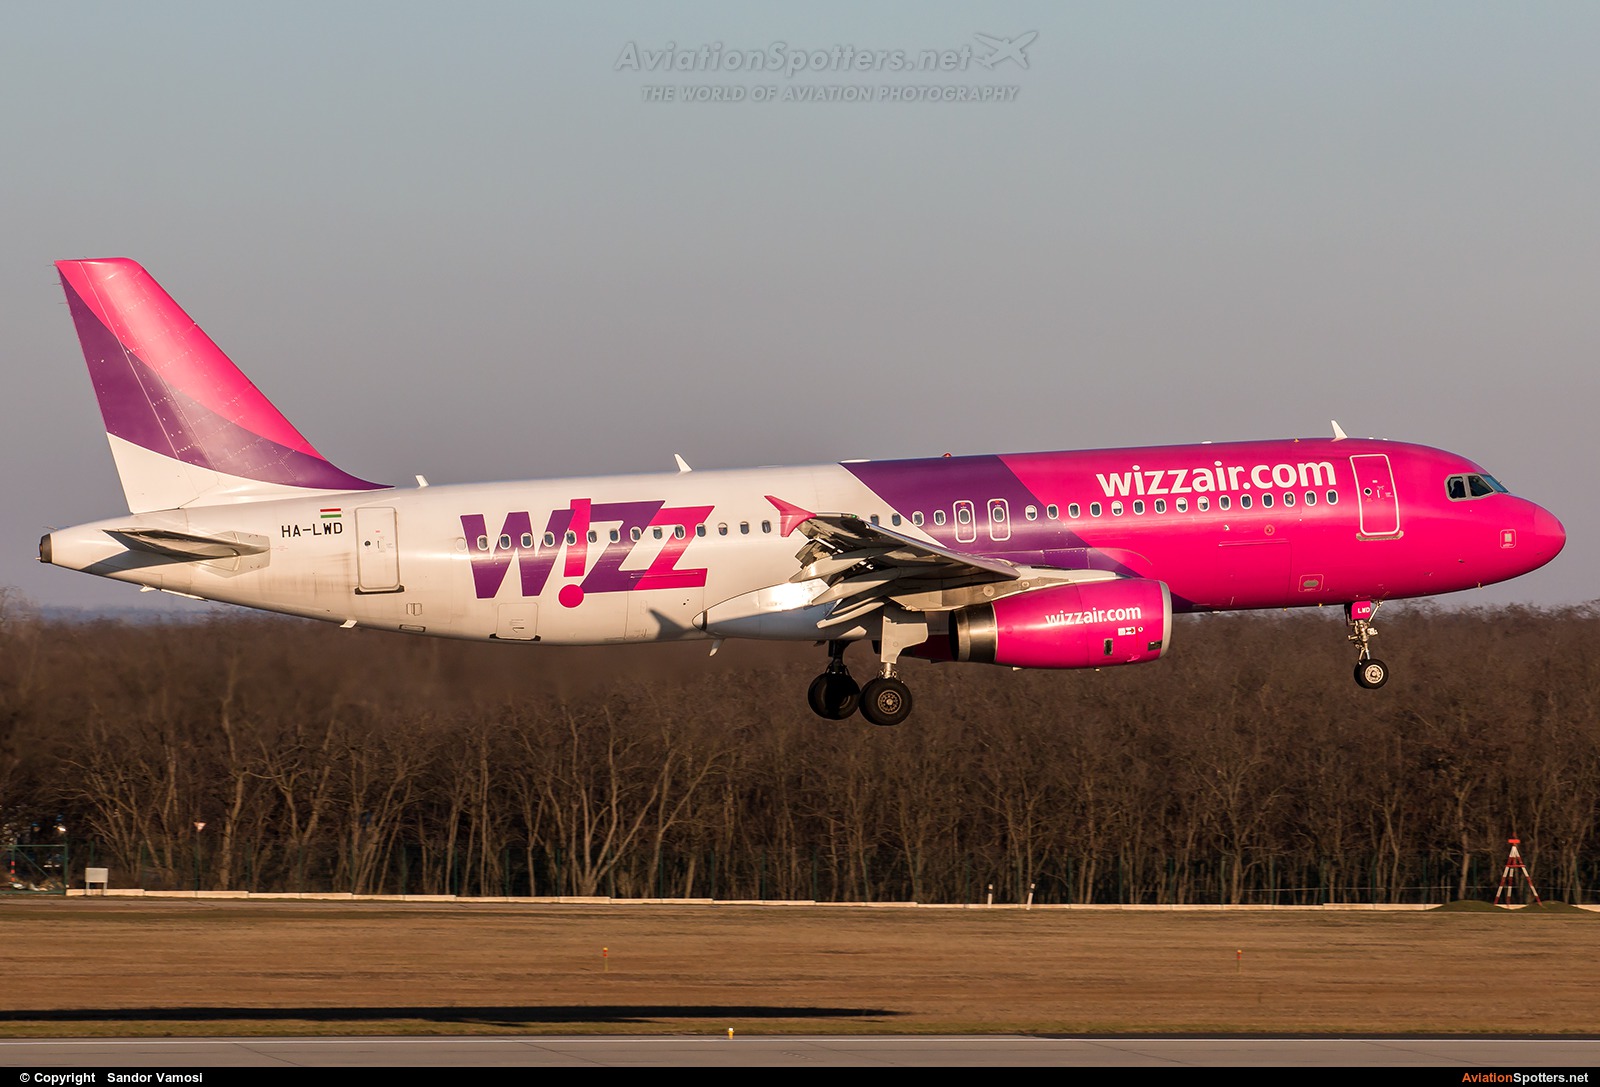 Wizz Air  -  A320  (HA-LWD) By Sandor Vamosi (ALEX67)